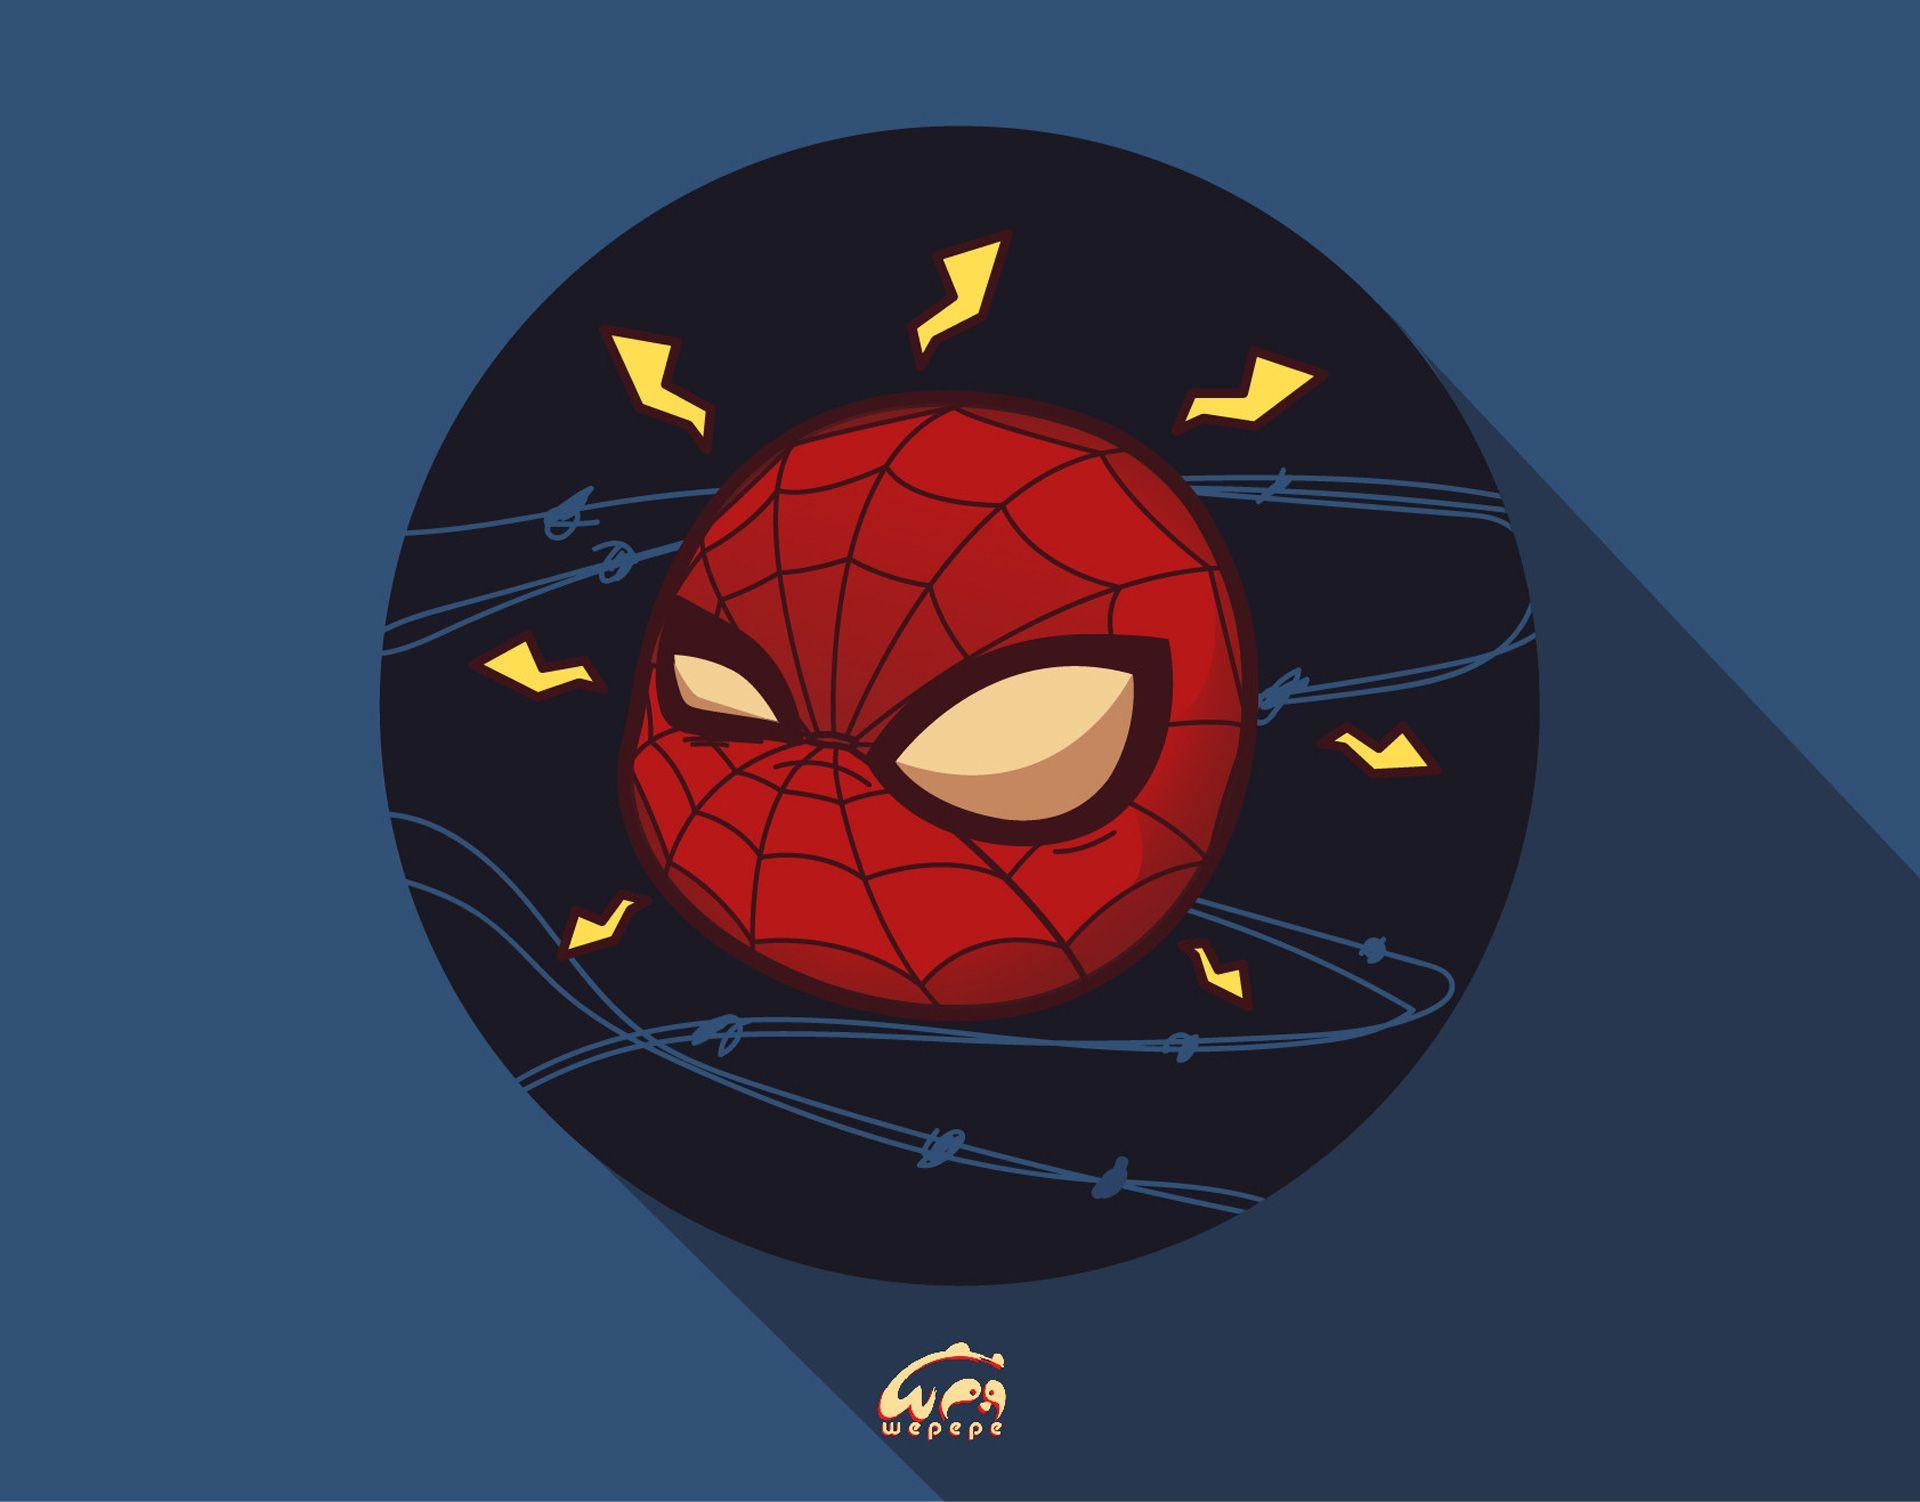 Trẻ trung và đầy sức sống với hình nền Spider Man chibi dễ thương. Chiếc di động của bạn sẽ trở thành một món đồ sành điệu với những hình ảnh đáng yêu của nhân vật trong phim. Bạn sẽ khám phá được nhiều điều mới và thú vị về câu chuyện của Spider Man mà bạn chưa biết.